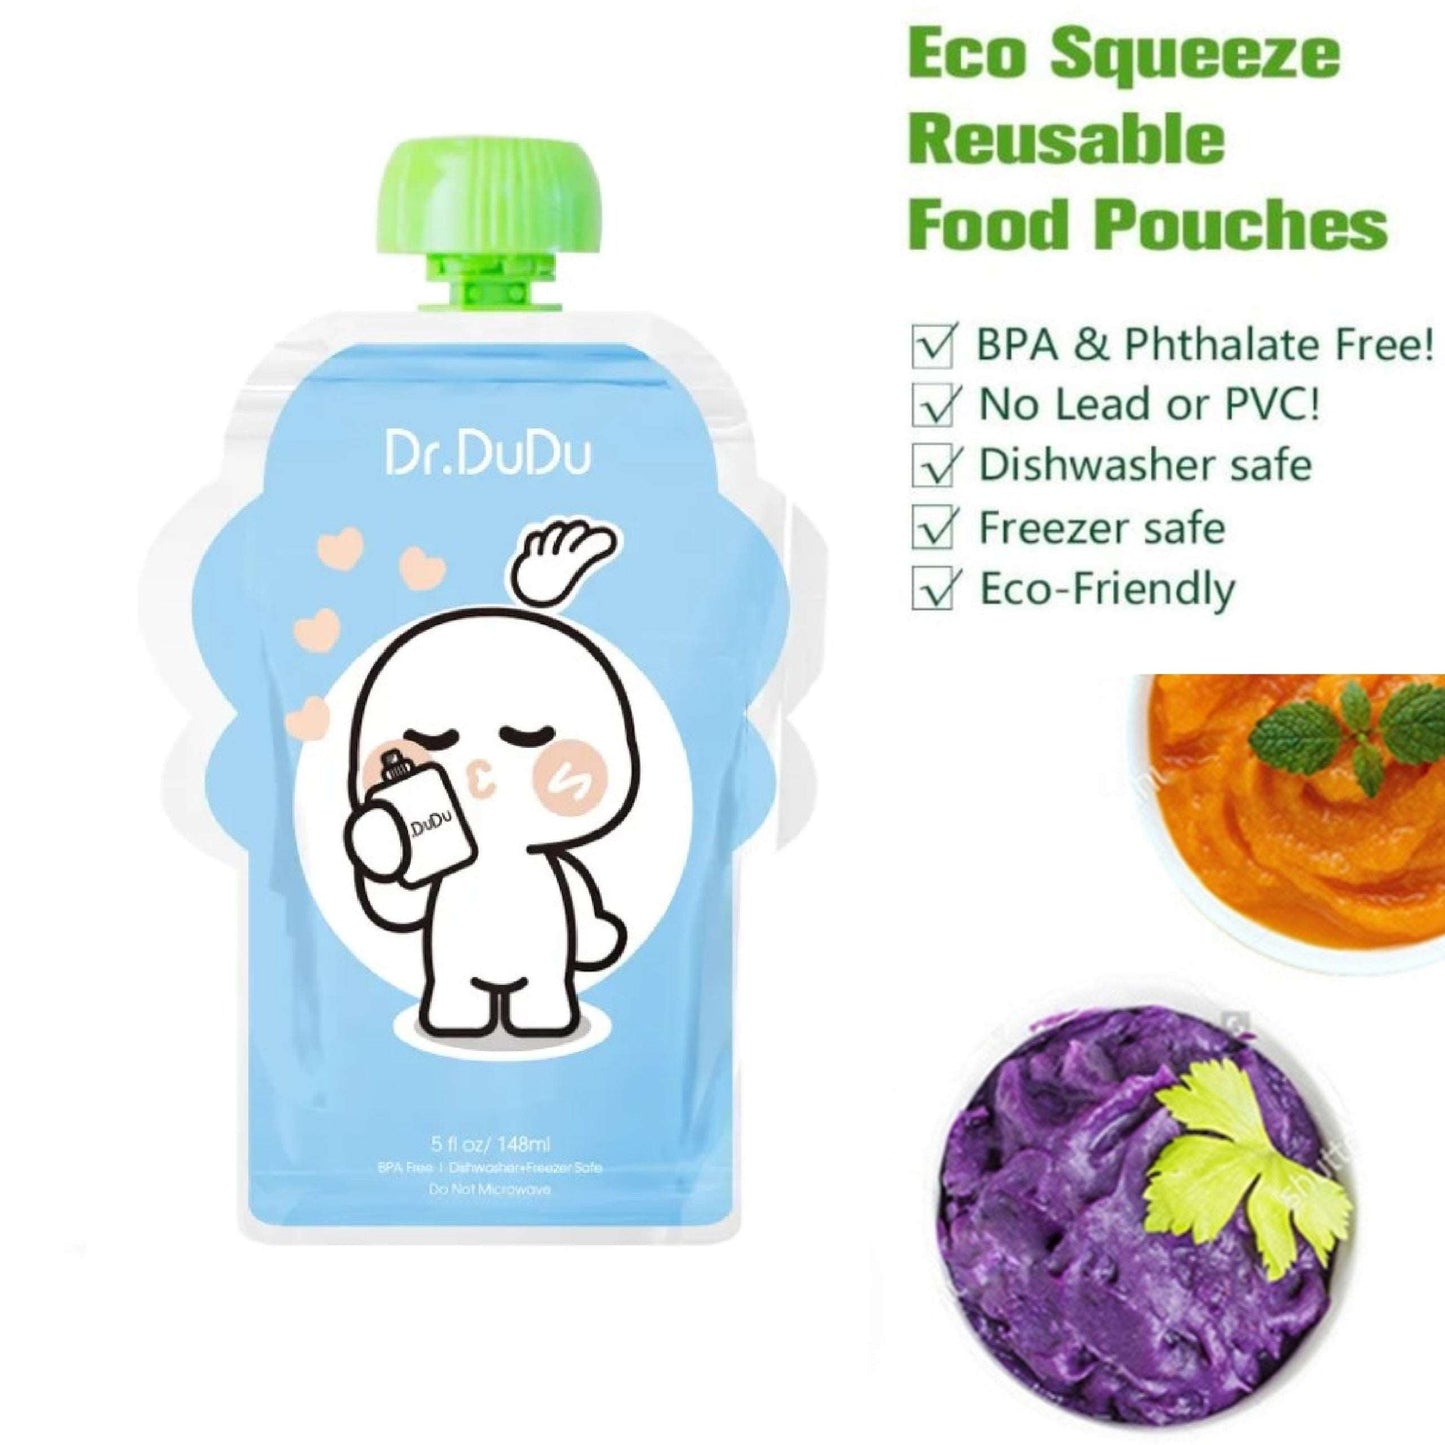 Reusable Food Pouches - Reusable Food Pouches (For Baby Food Or Yogurt) - 5 Pack